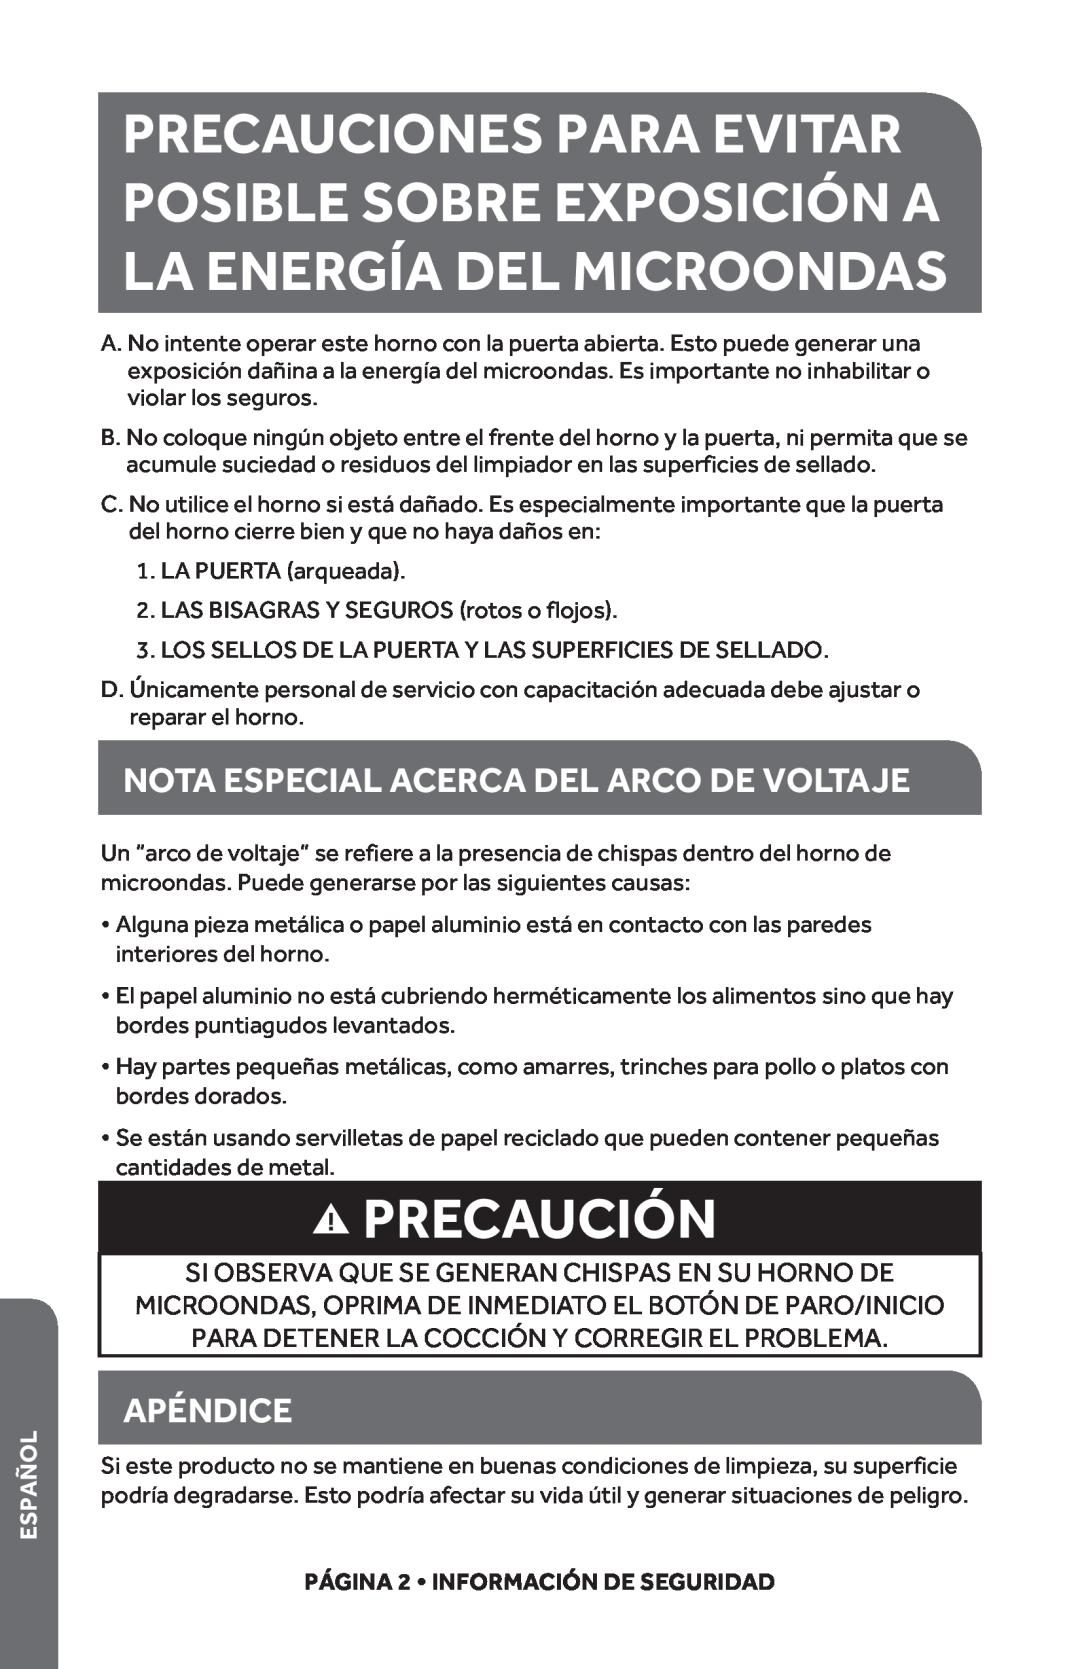 Haier HMC1685SESS user manual Precaución, Nota Especial Acerca Del Arco De Voltaje, Apéndice, Español 